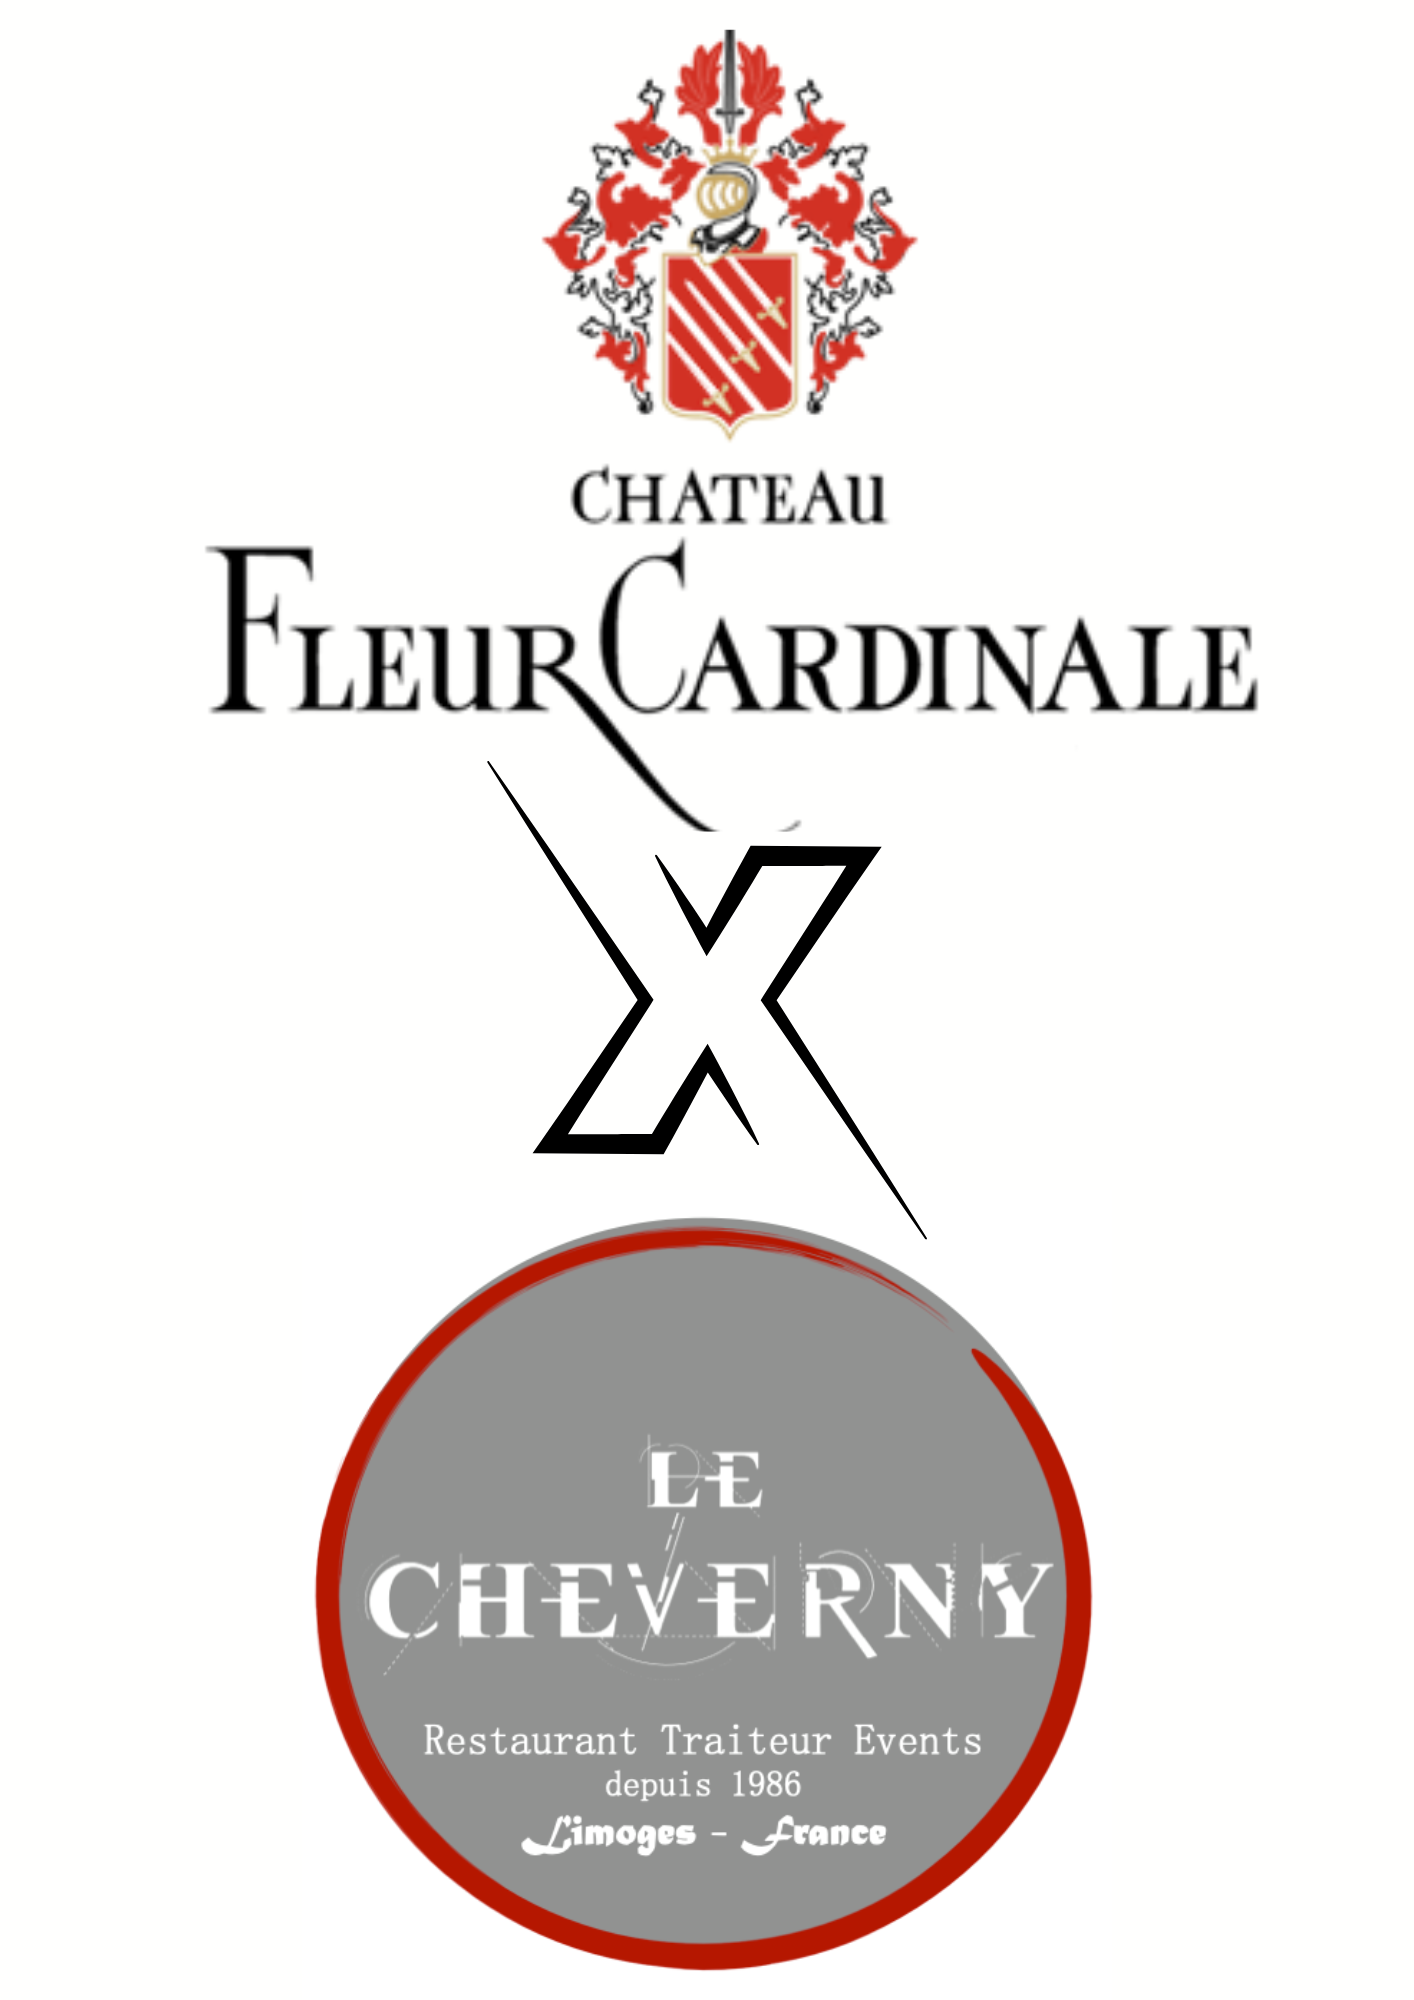 03/10/2024 Soirée accords mets et vins Fleur Cardinale au restaurant Le Cheverny